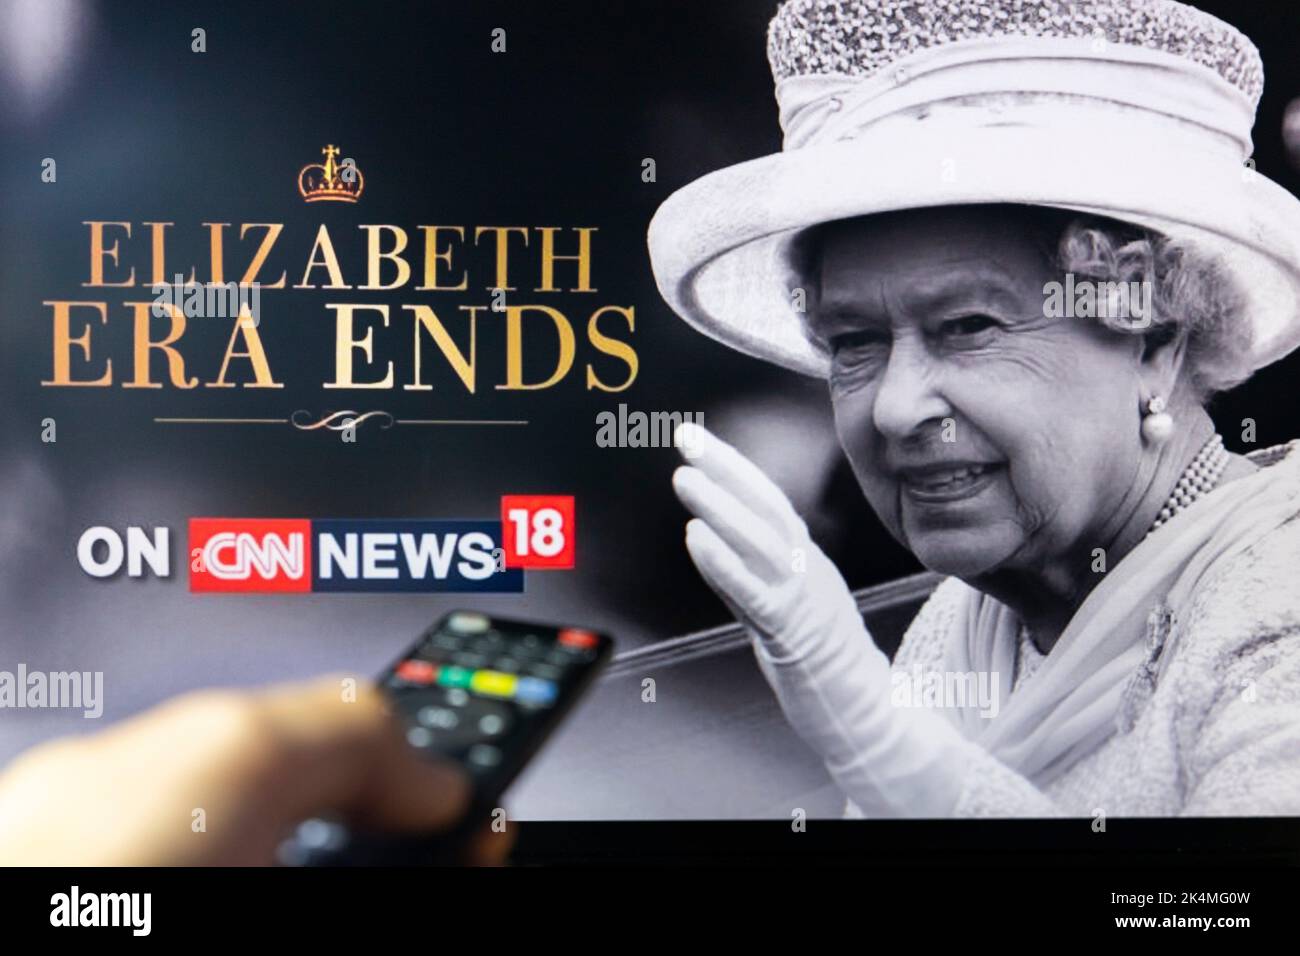 Belgrade, Serbie - 12 septembre 2022: Passage de la reine Elizabeth II. L'ère Elizabeth prend fin. Regarder les nouvelles de CNN à la télévision au sujet de Late Queen avec télécommande Banque D'Images